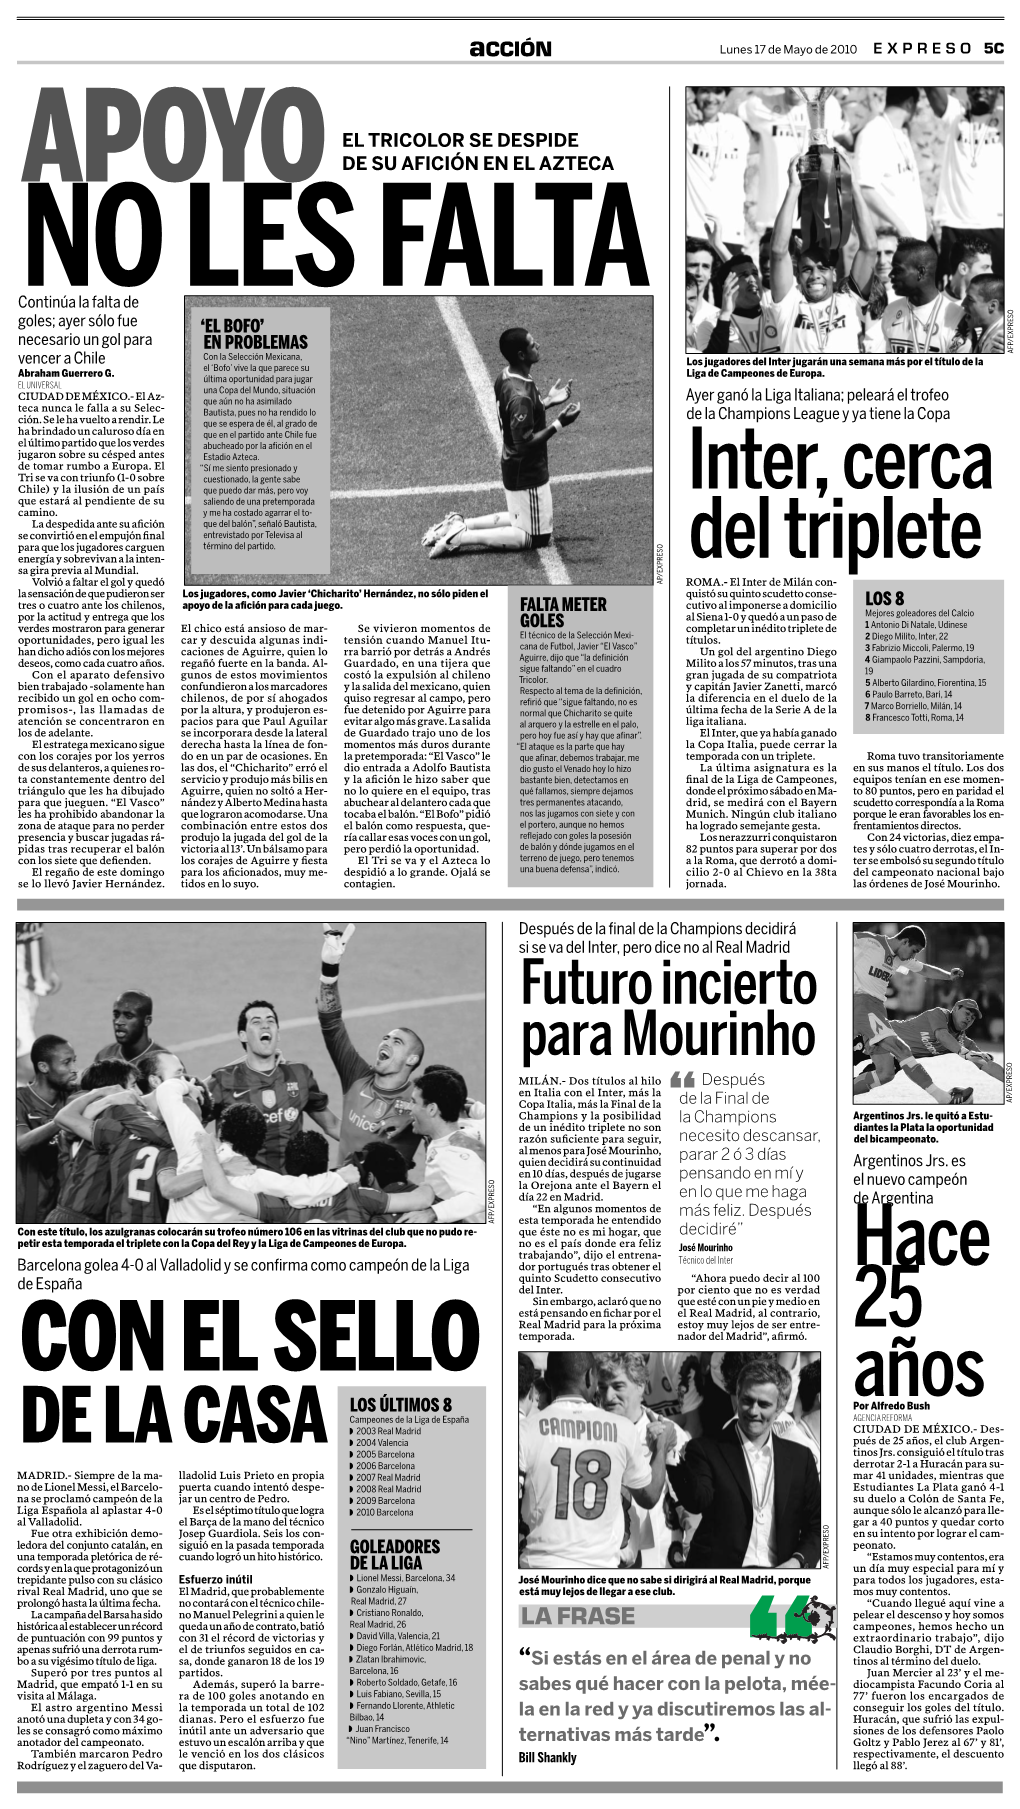 DE LA CASA ◗ 2003 Real Madrid CIUDAD DE MÉXICO.- Des- ◗ 2004 Valencia Pués De 25 Años, El Club Argen- ◗ 2005 Barcelona Tinos Jrs